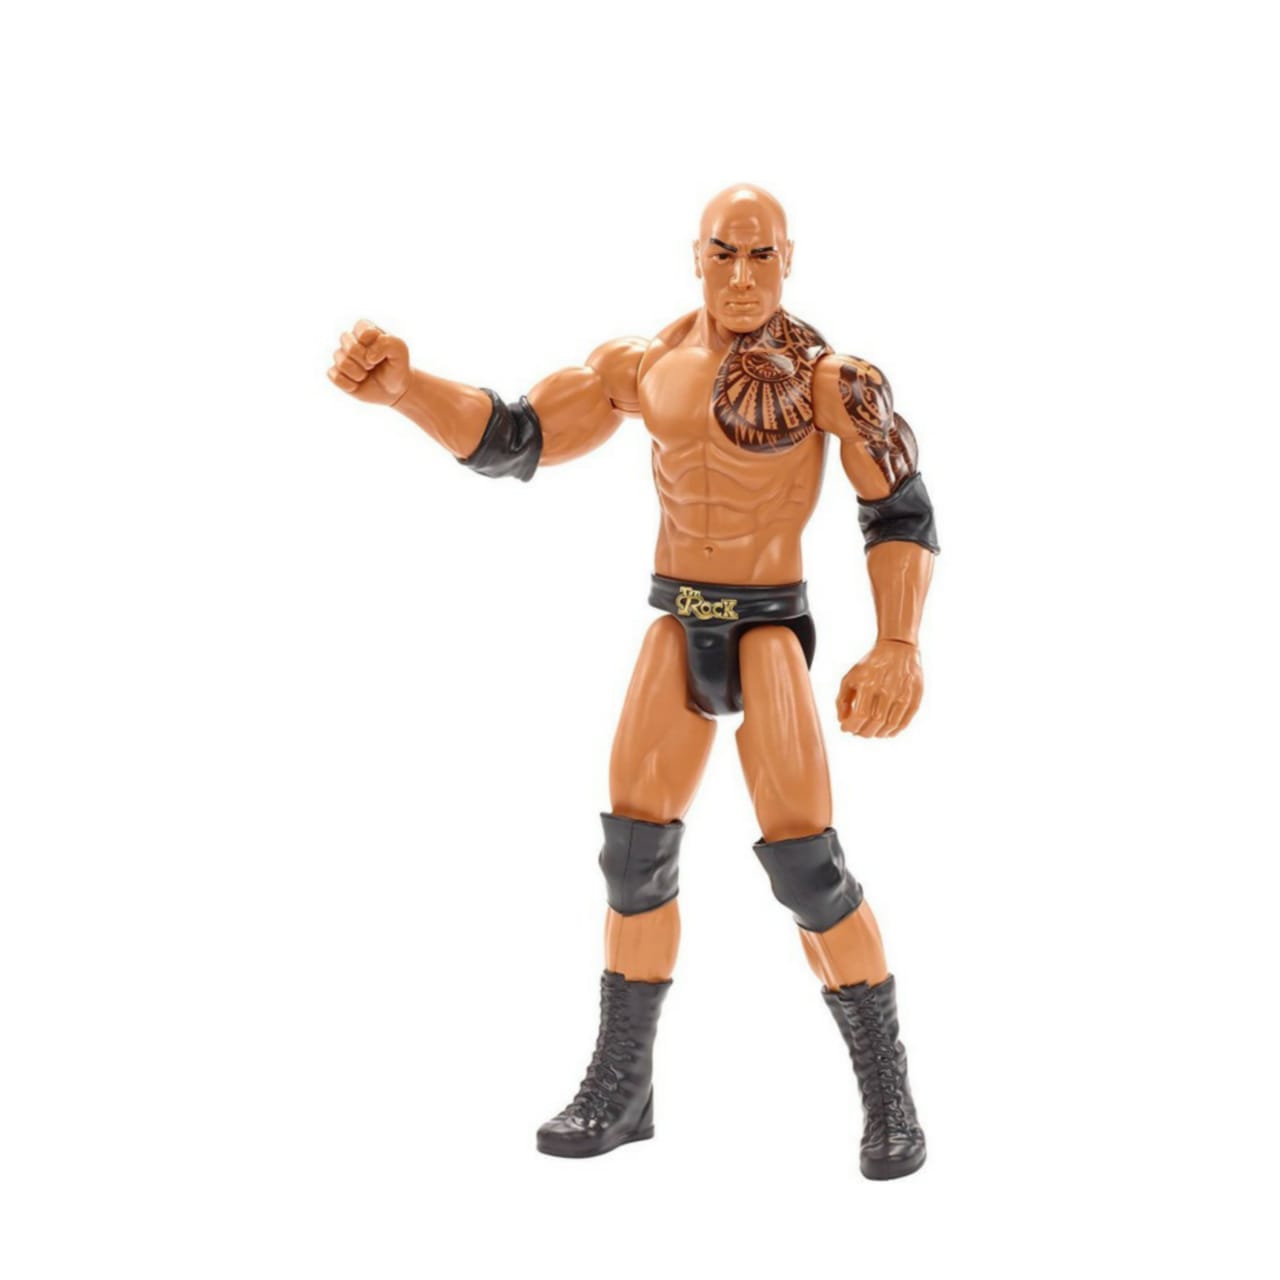 Vreemdeling Gezamenlijk Fraude WWE Superstars Action Figure 30Cm The Rock-DJJ16 - Toys 4You Store